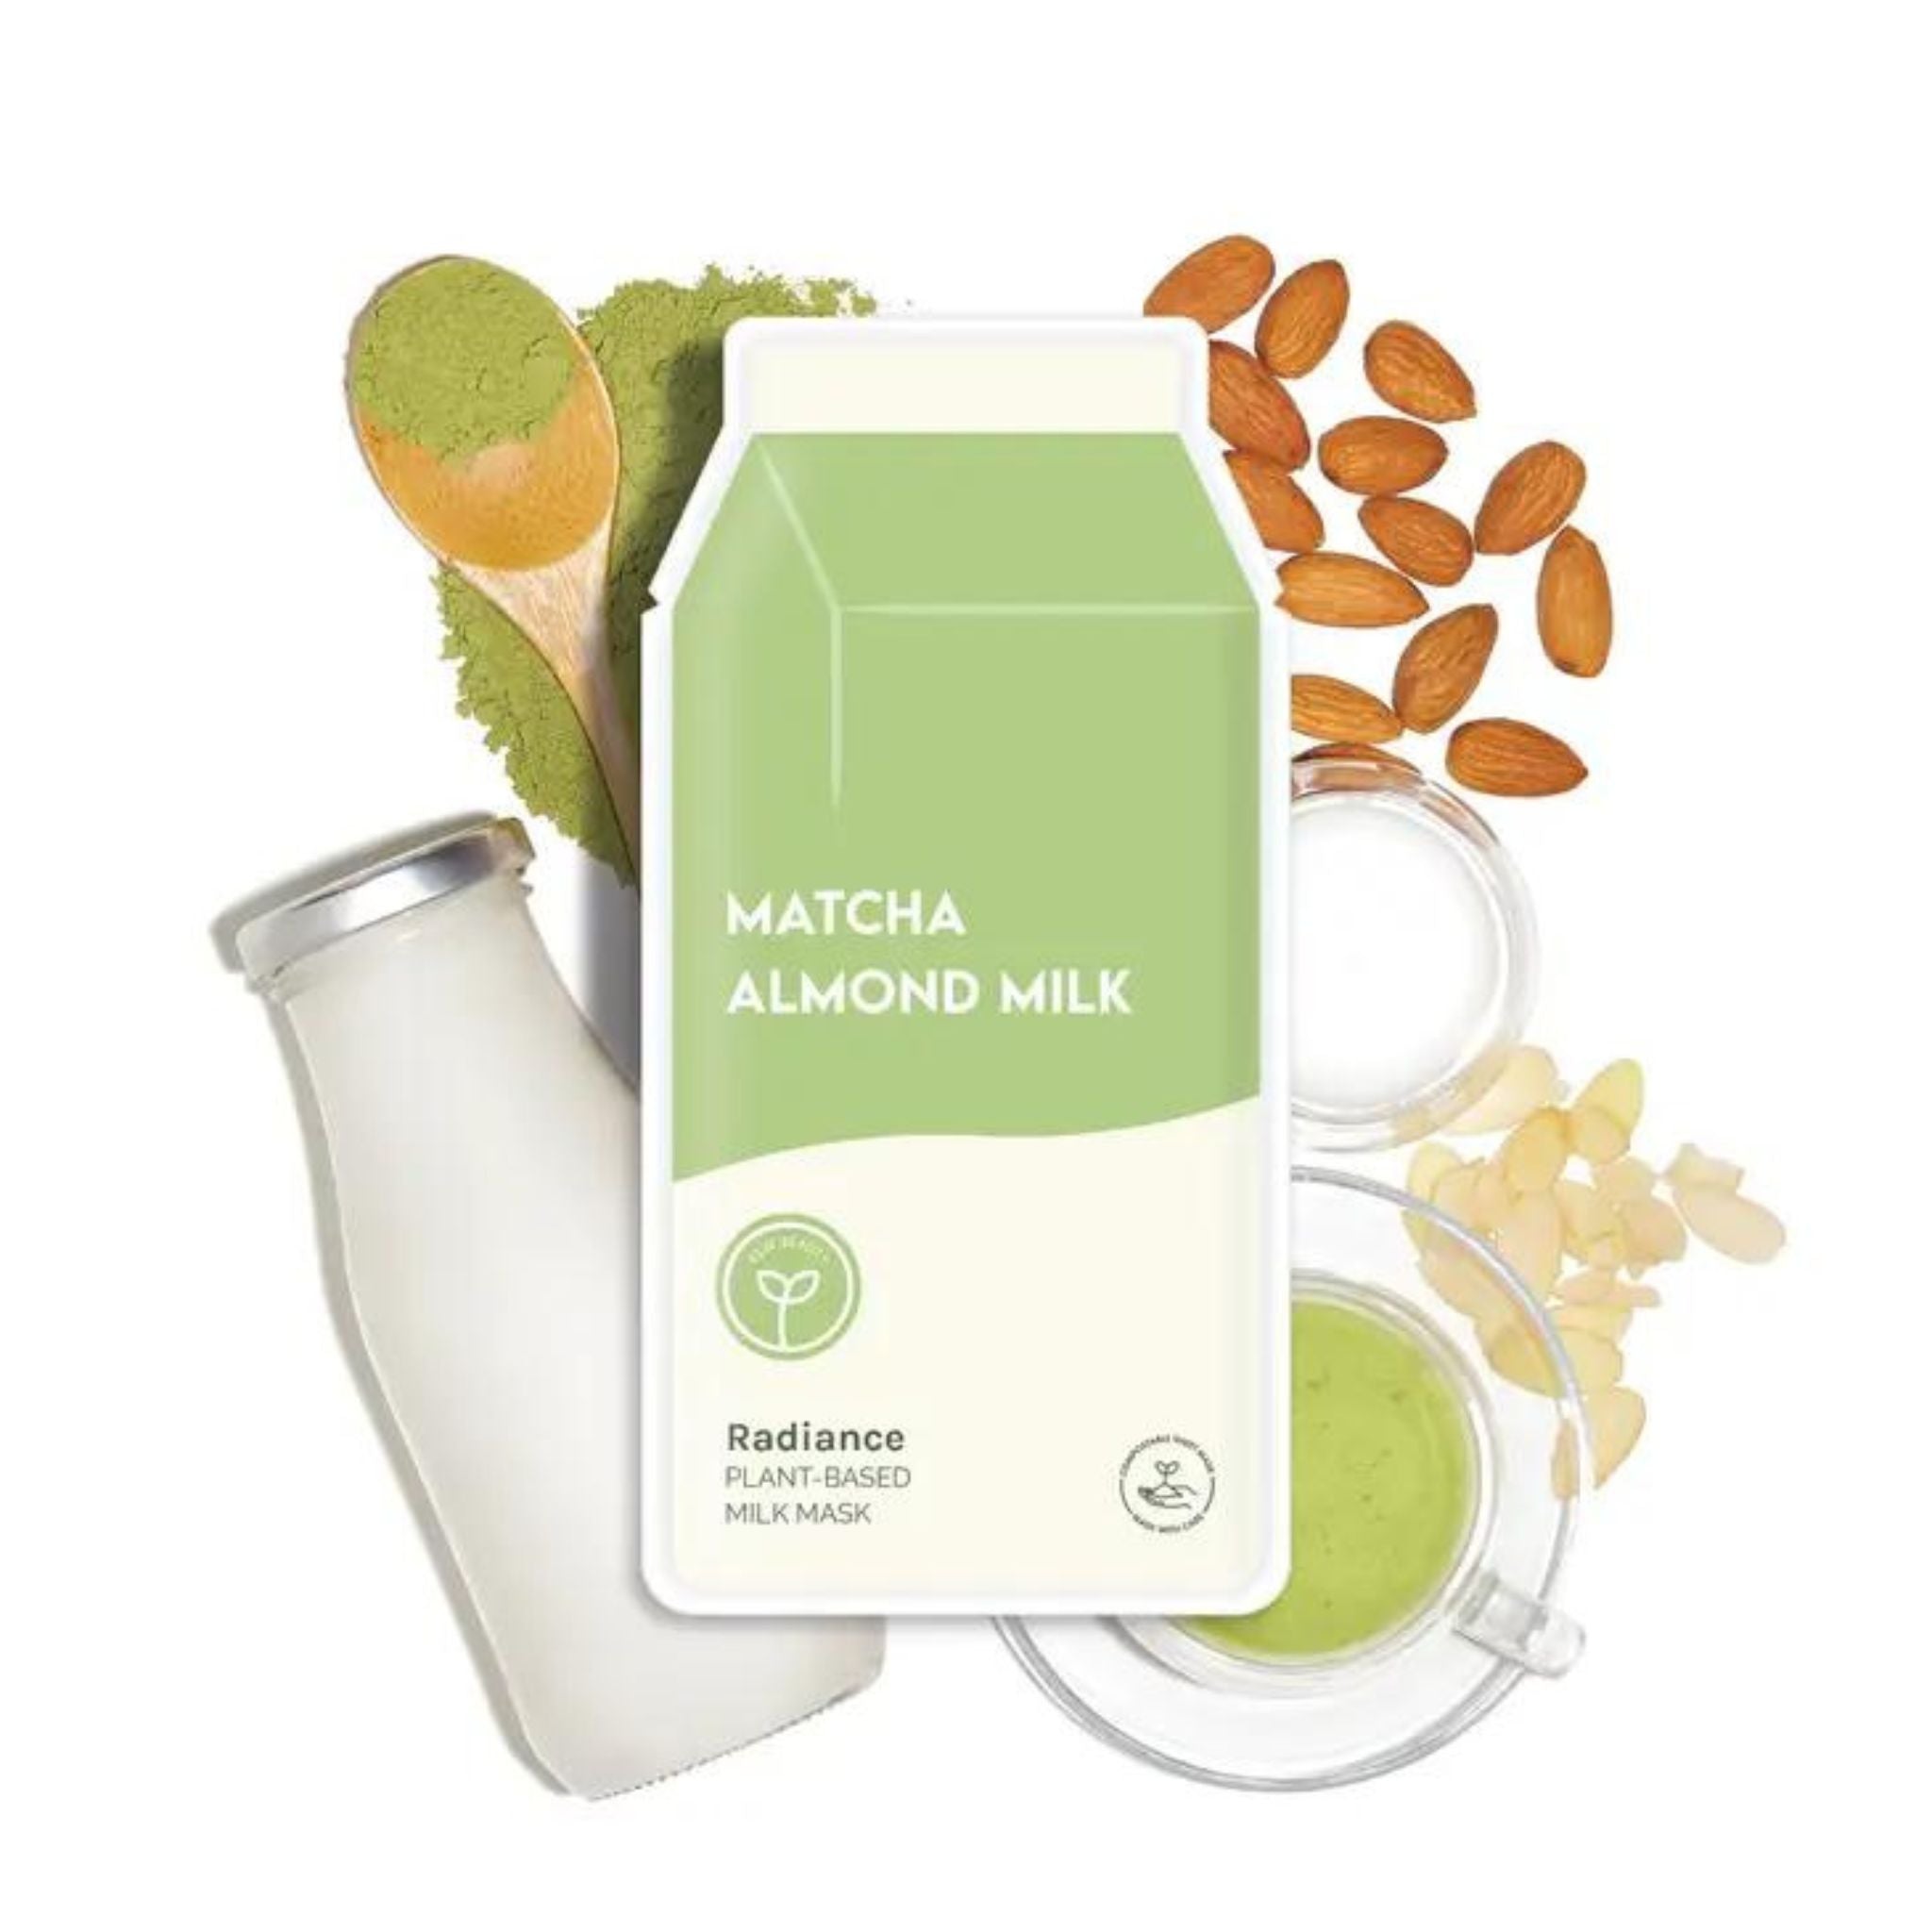 Matcha Almond Milk Sheet Mask